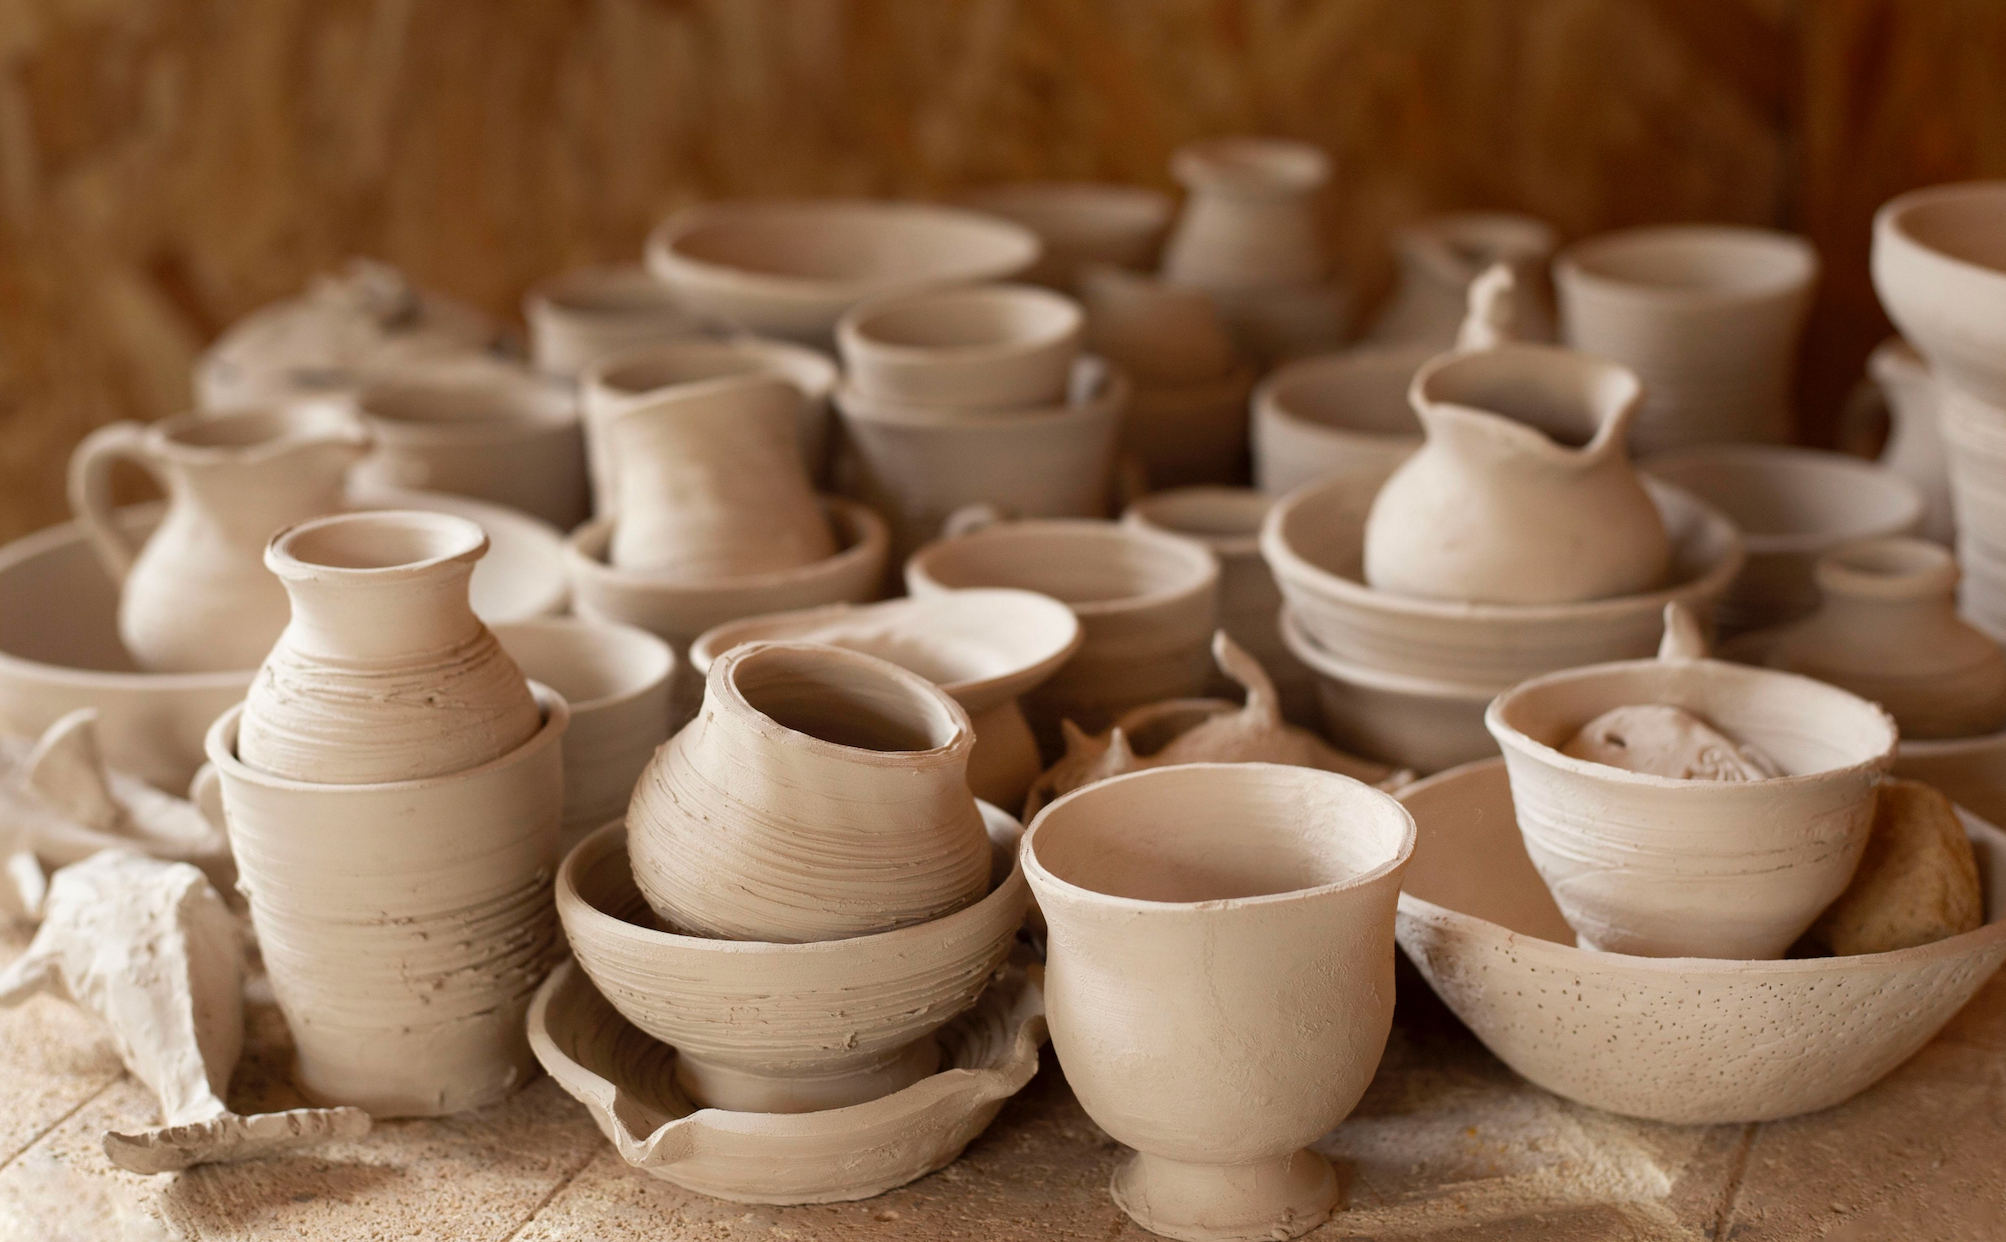 Proč se vyplatí kupovat ručně vyráběnou keramiku?